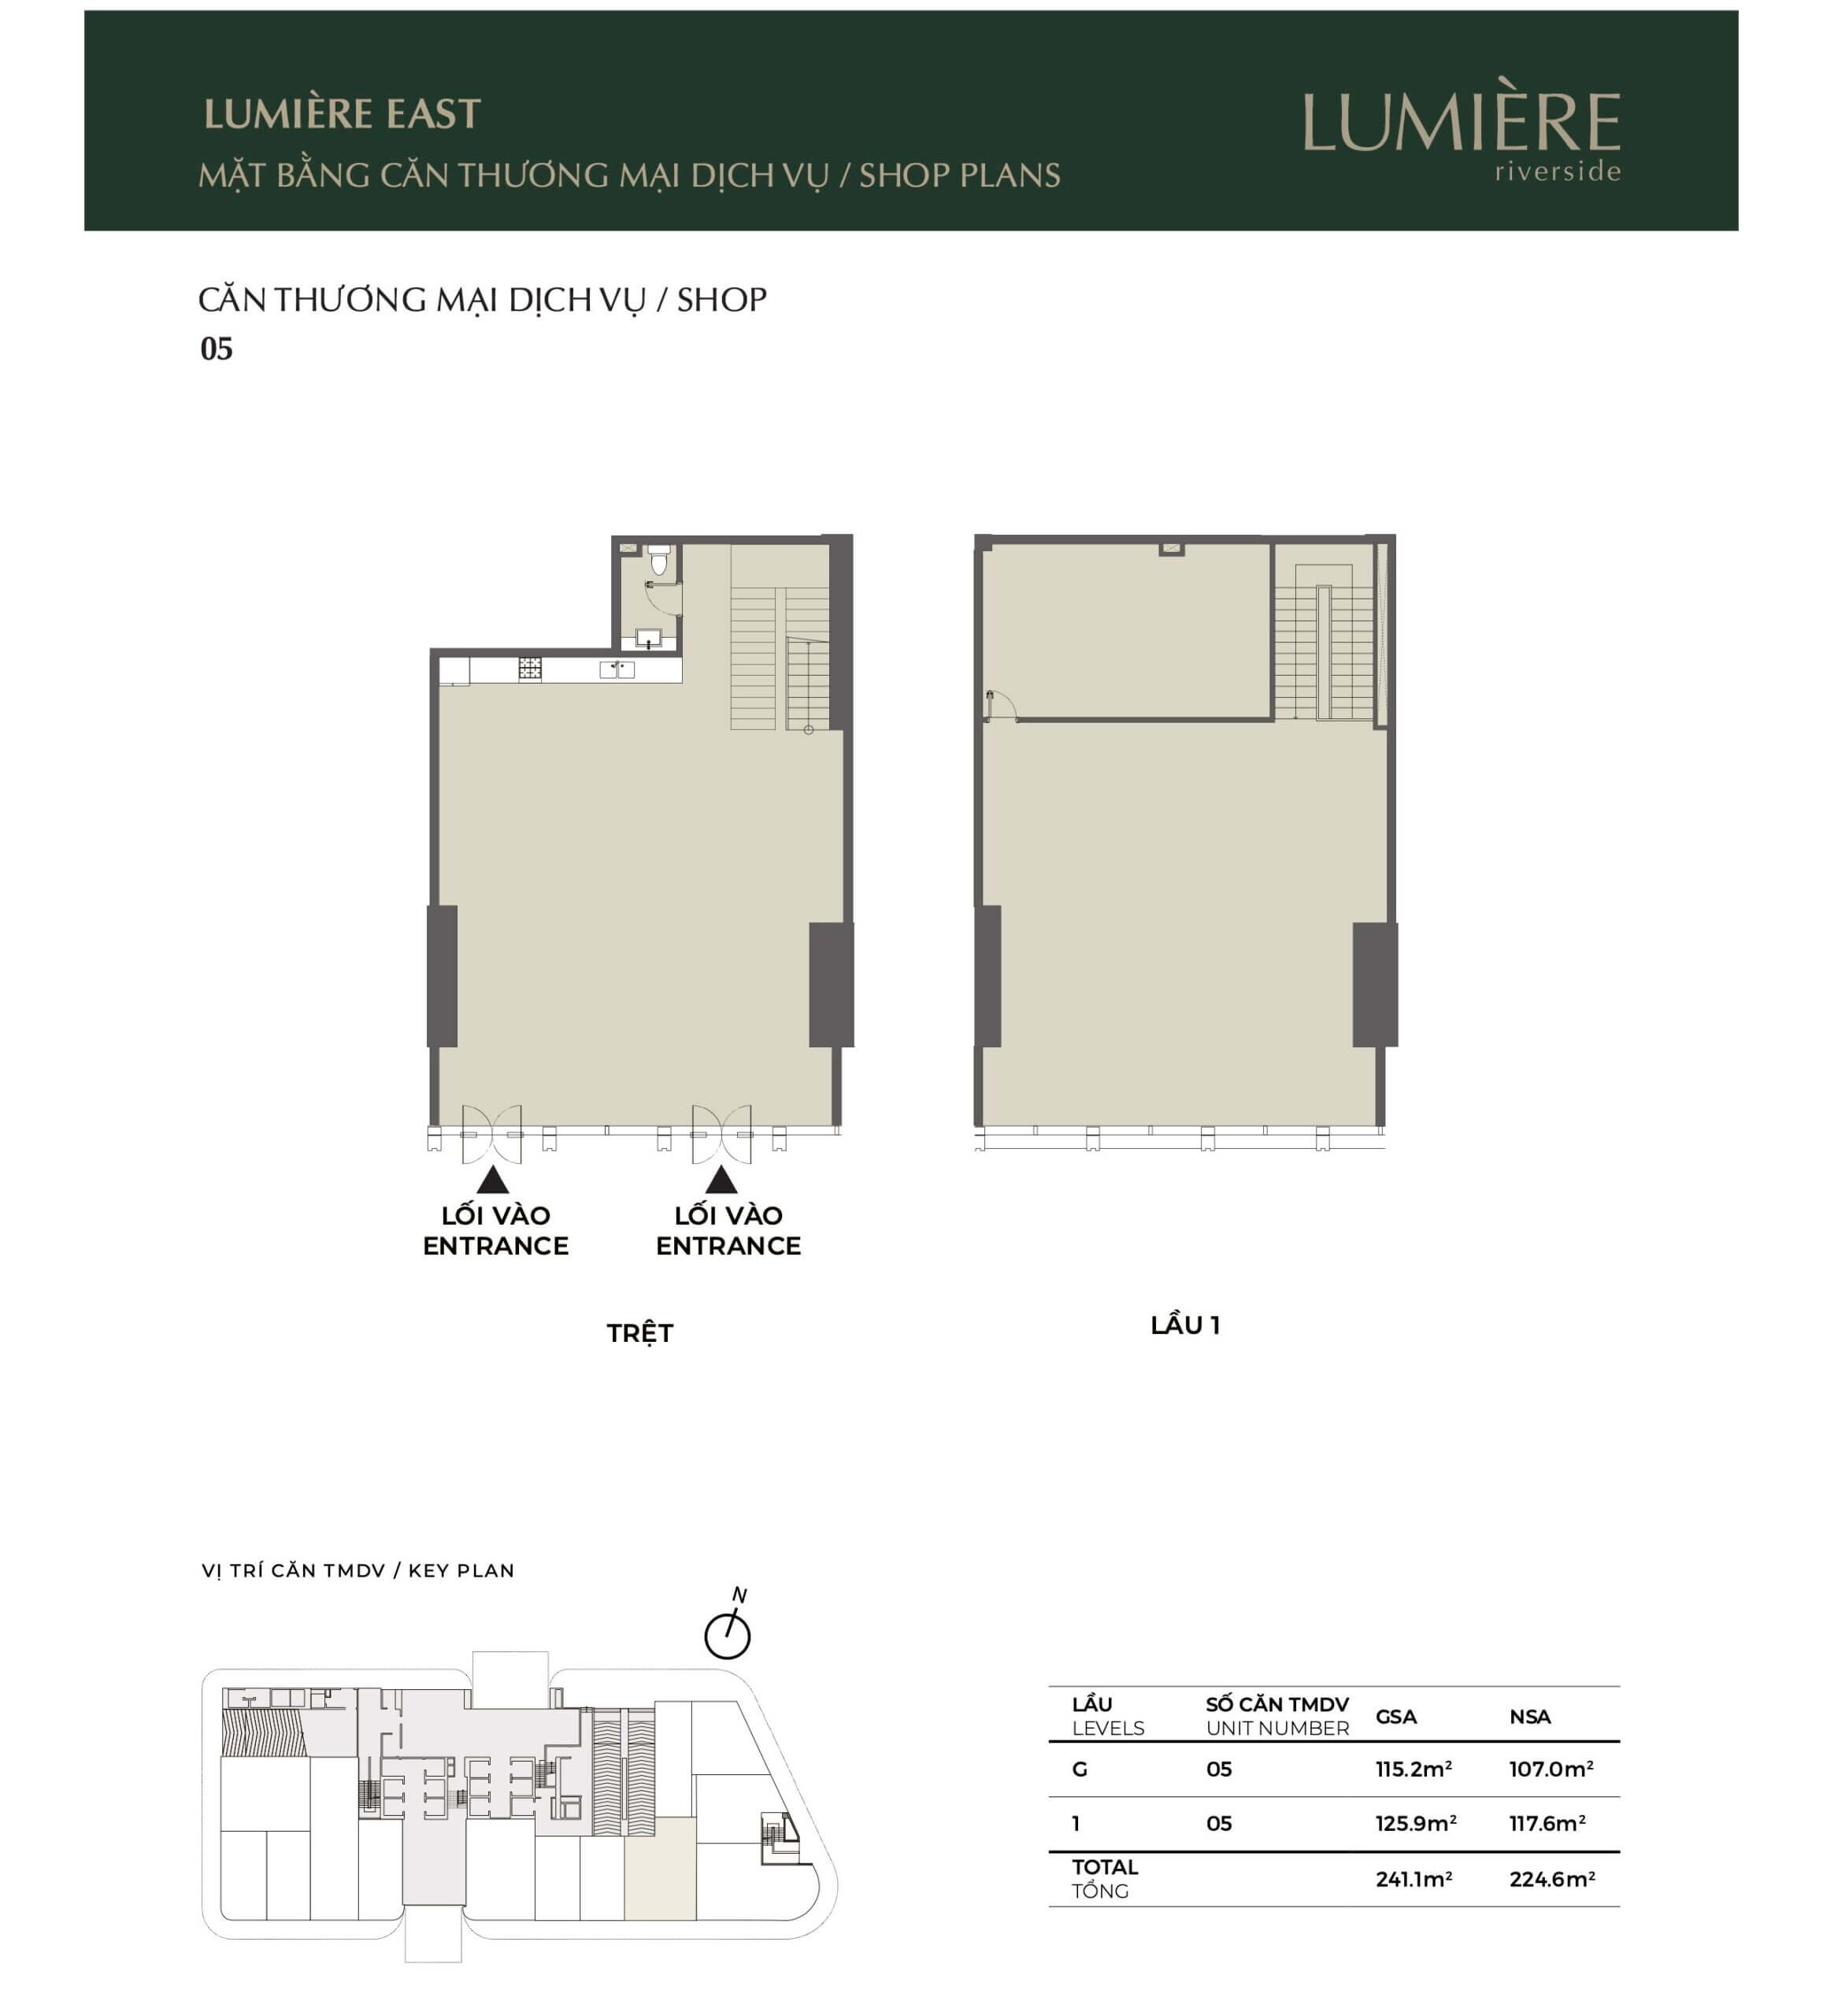 Mặt bằng layout shophouse Lumiere Riverside tháp East căn số 05 - cho thuê chuyển nhượng mua bán căn hộ Lumiere Riverside